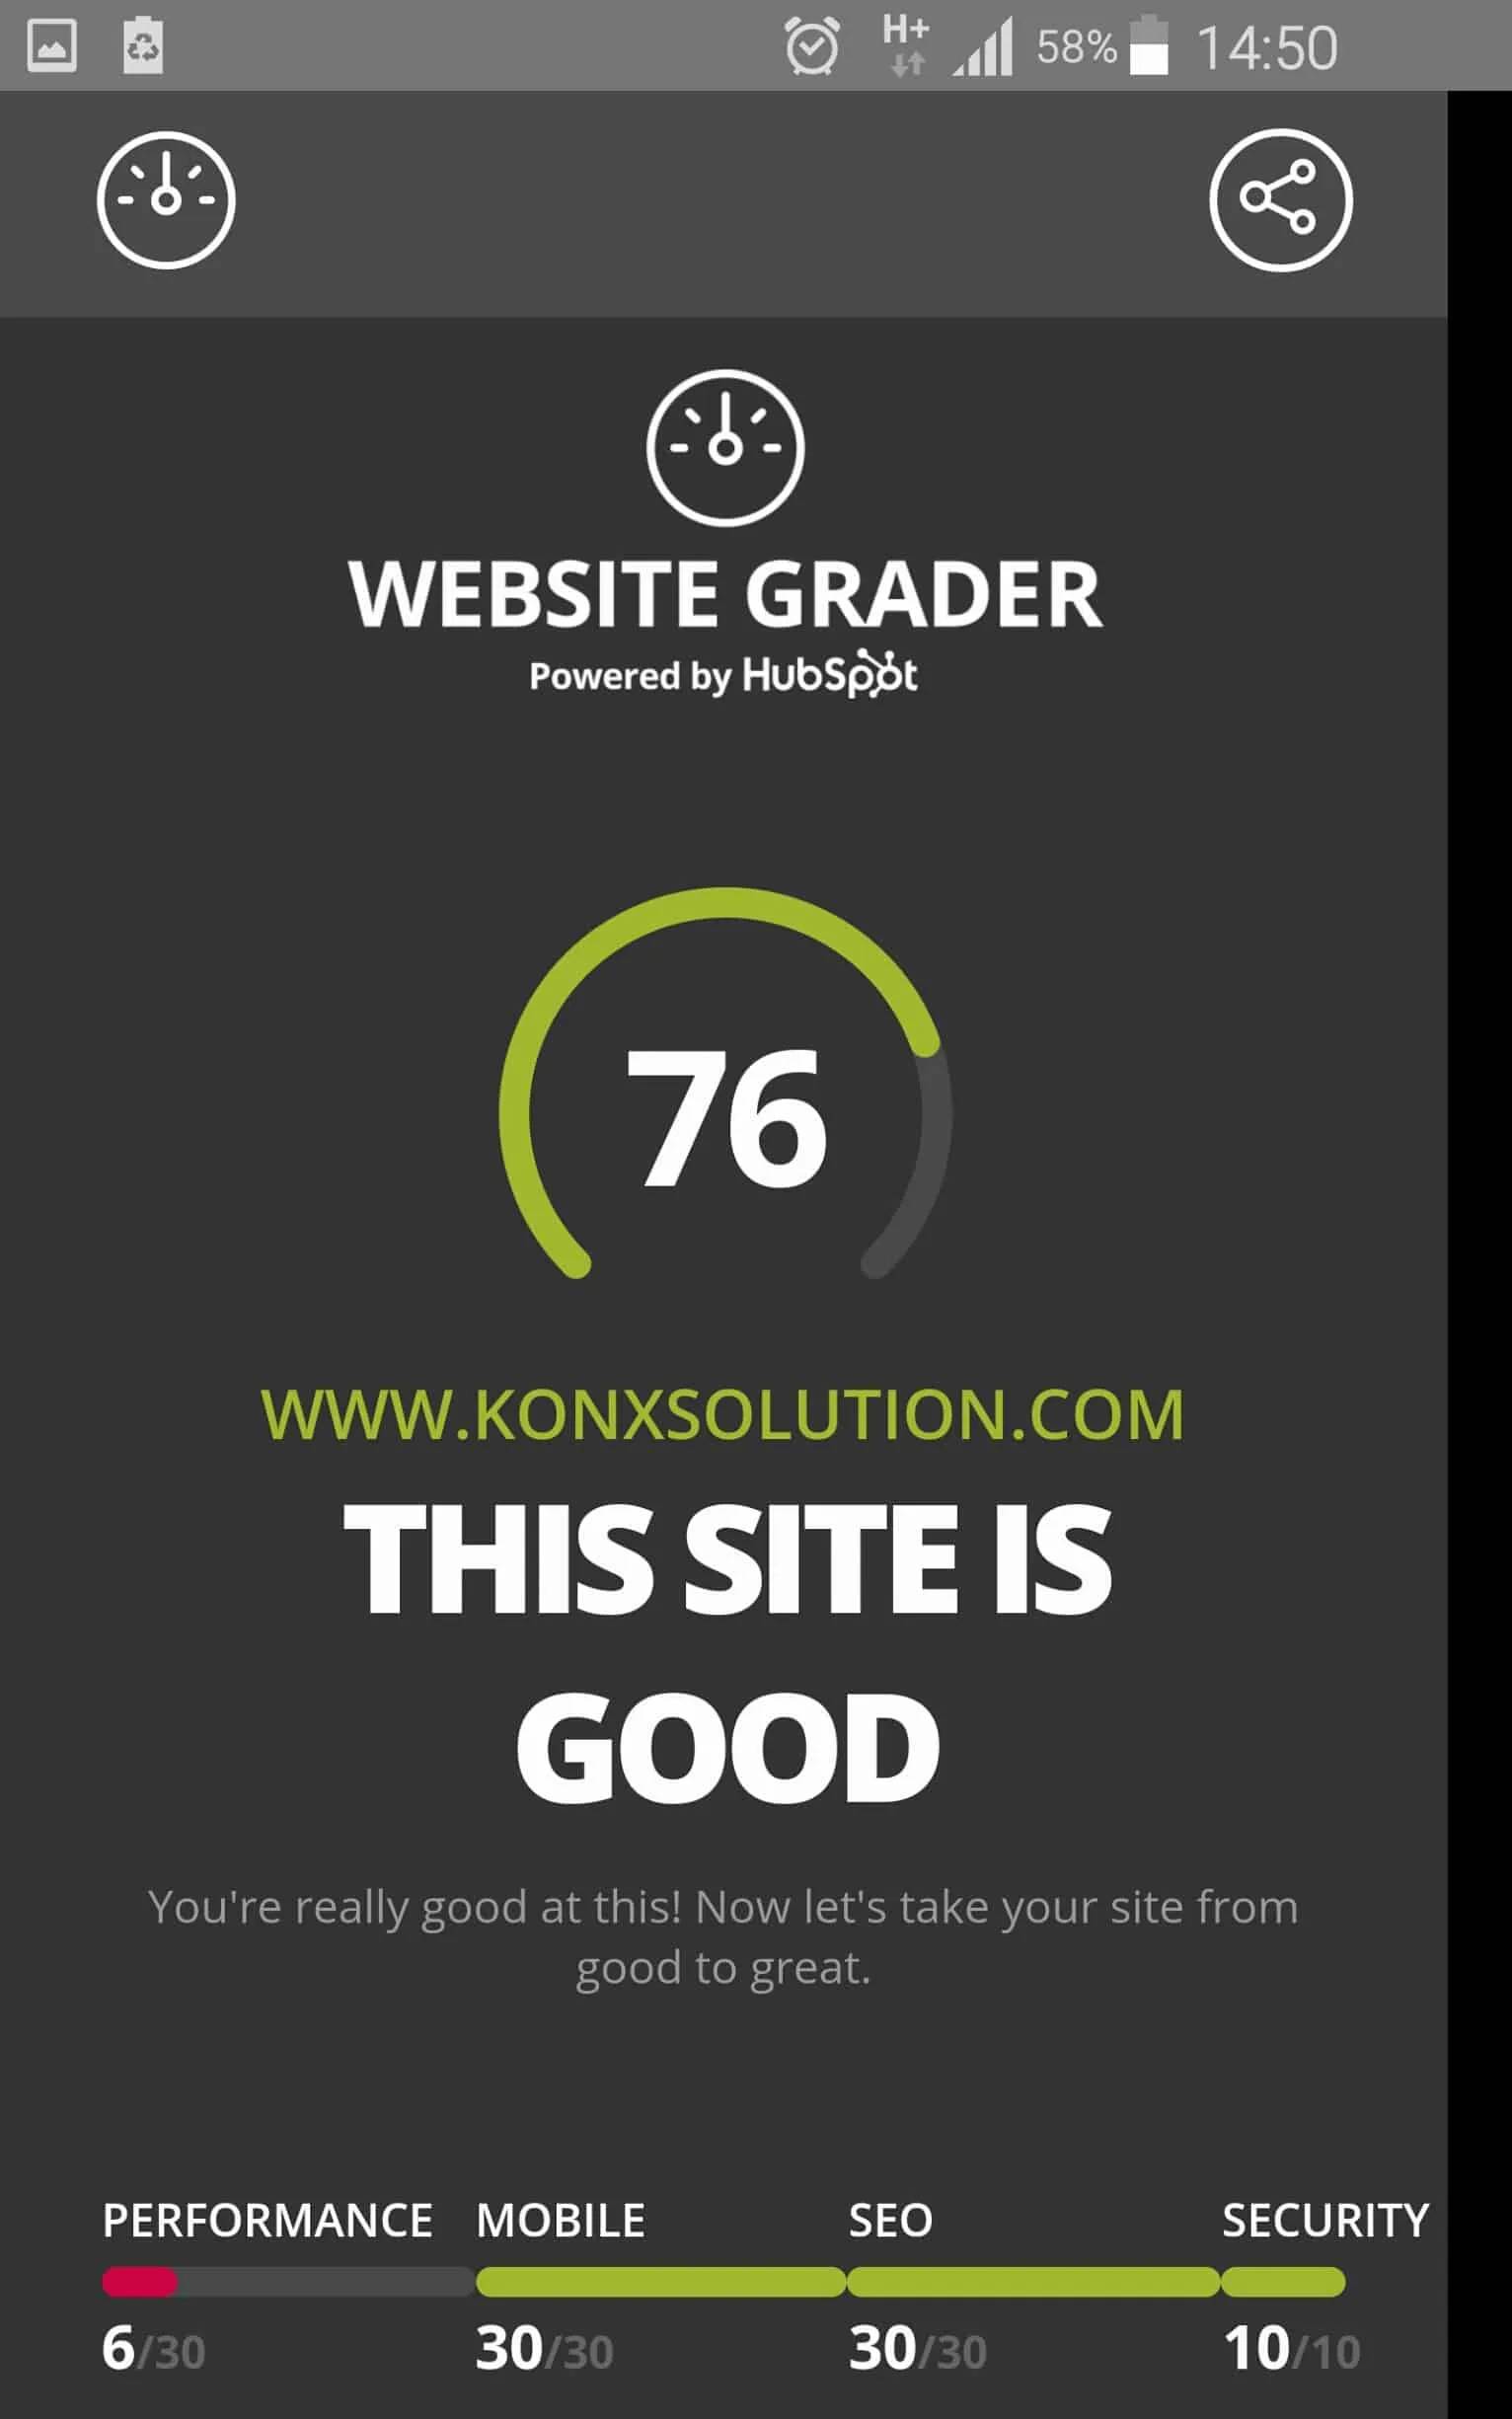 hubspot website grader clarence ling testing konx solution website 